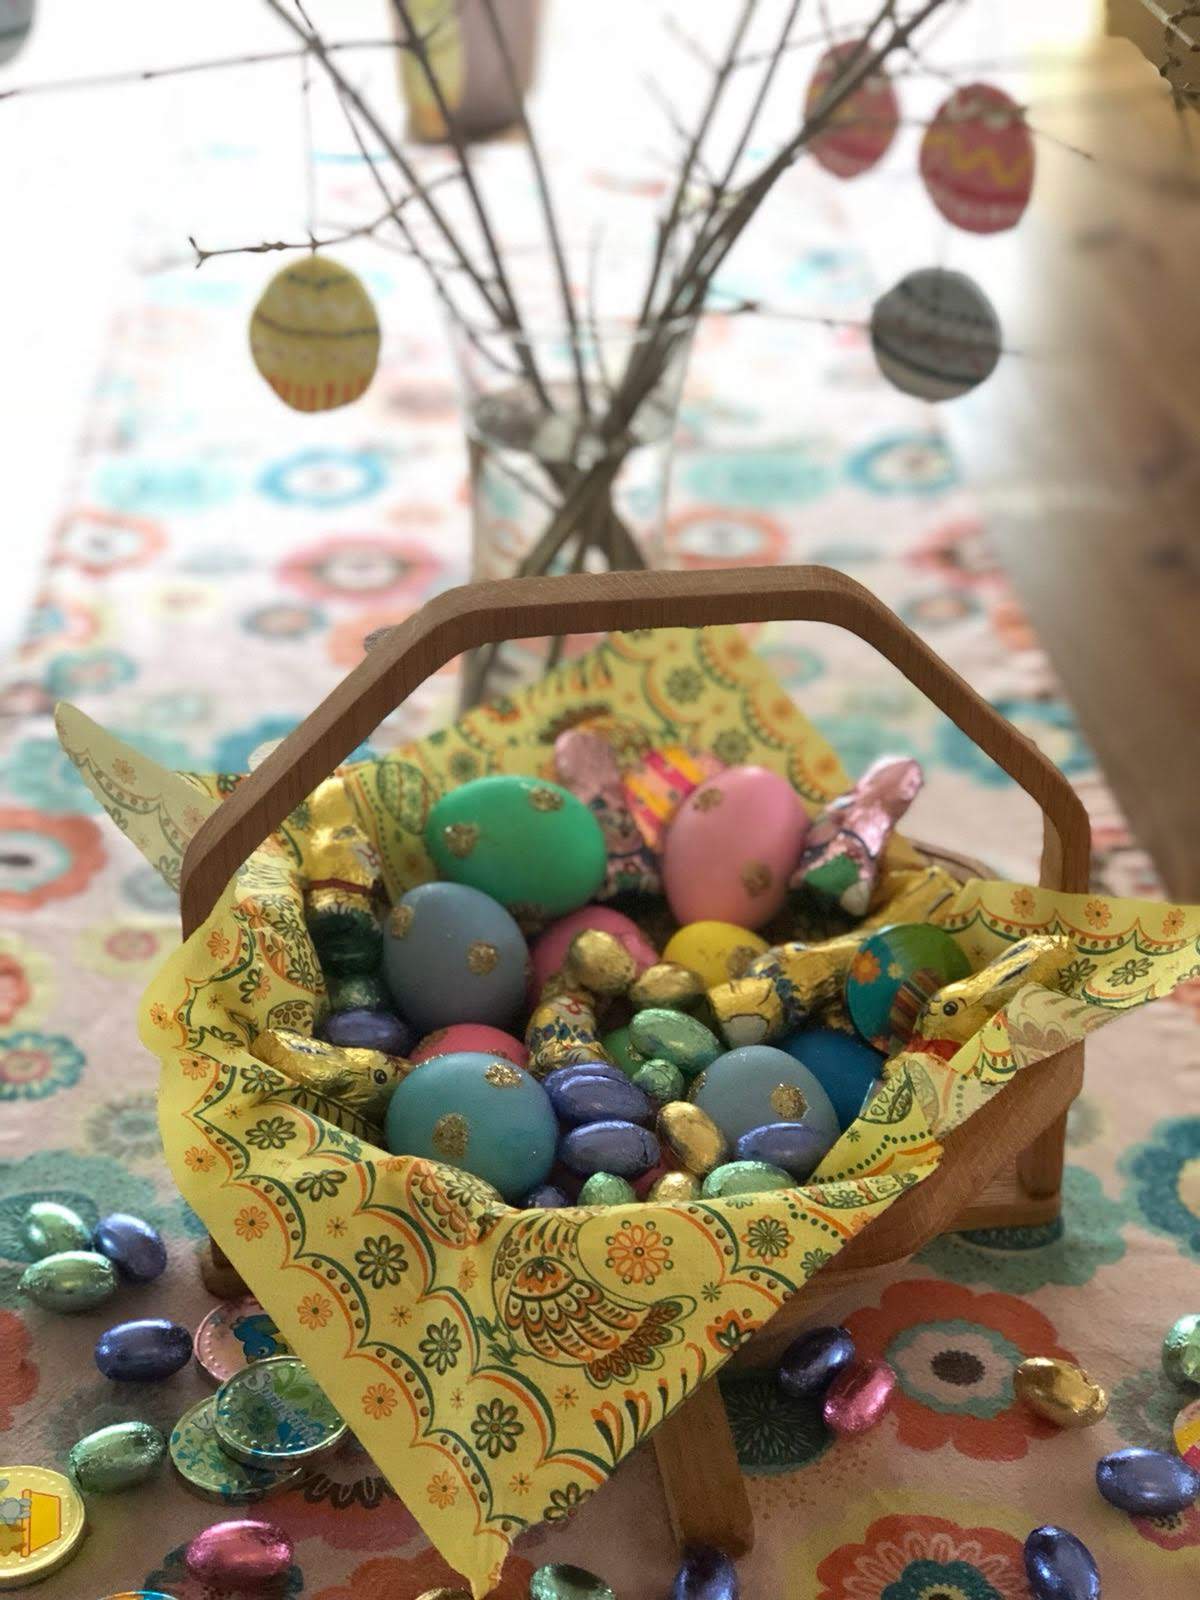 Best Easter Egg Hunts for kids